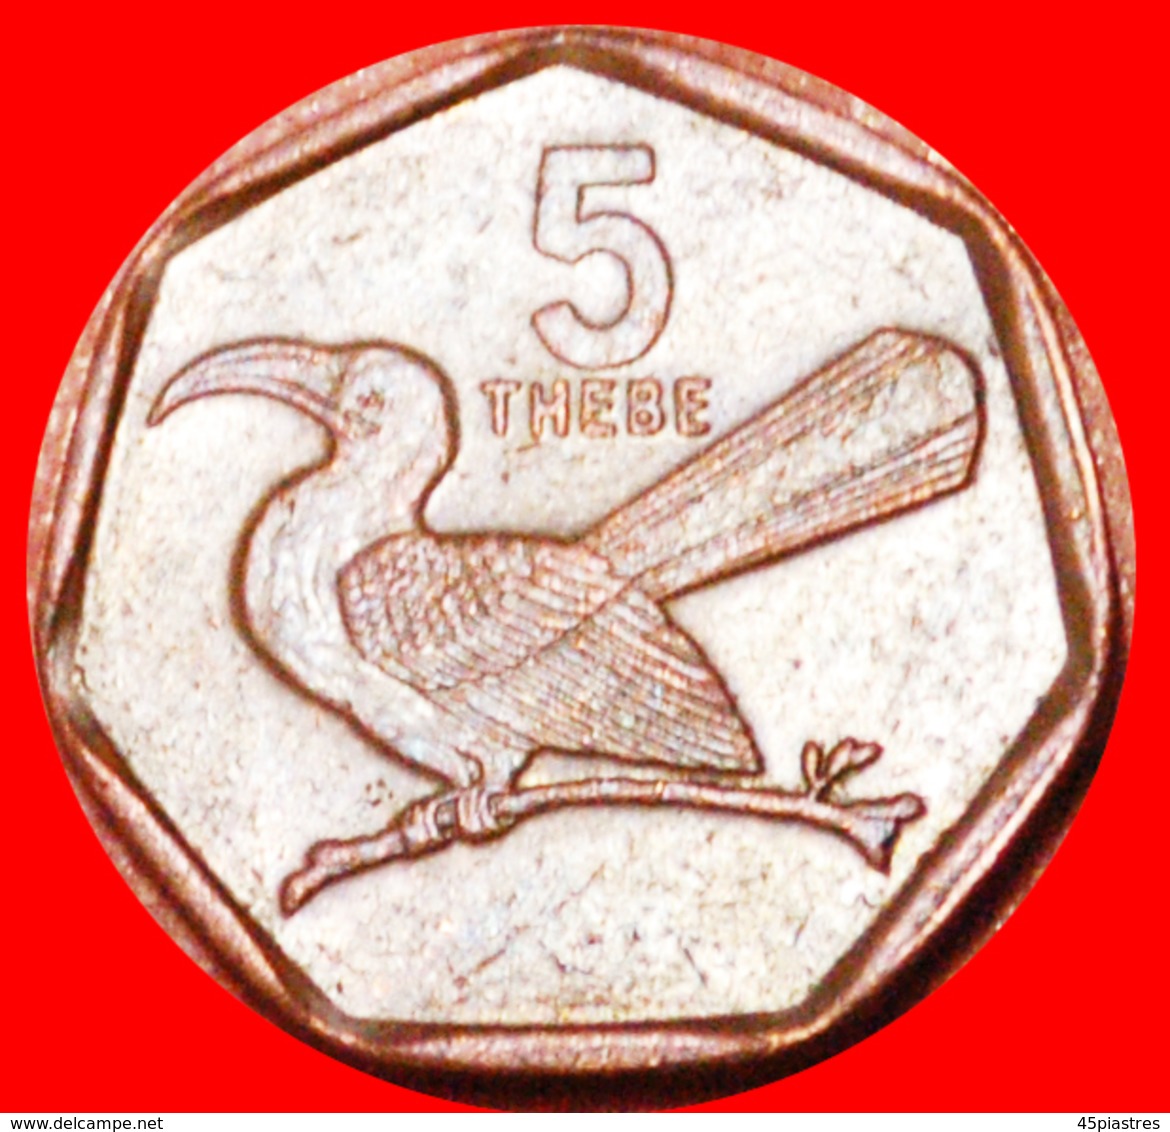 # BIRD: BOTSWANA ★ 5 THEBE 1998! LOW START ★ NO RESERVE! - Botswana